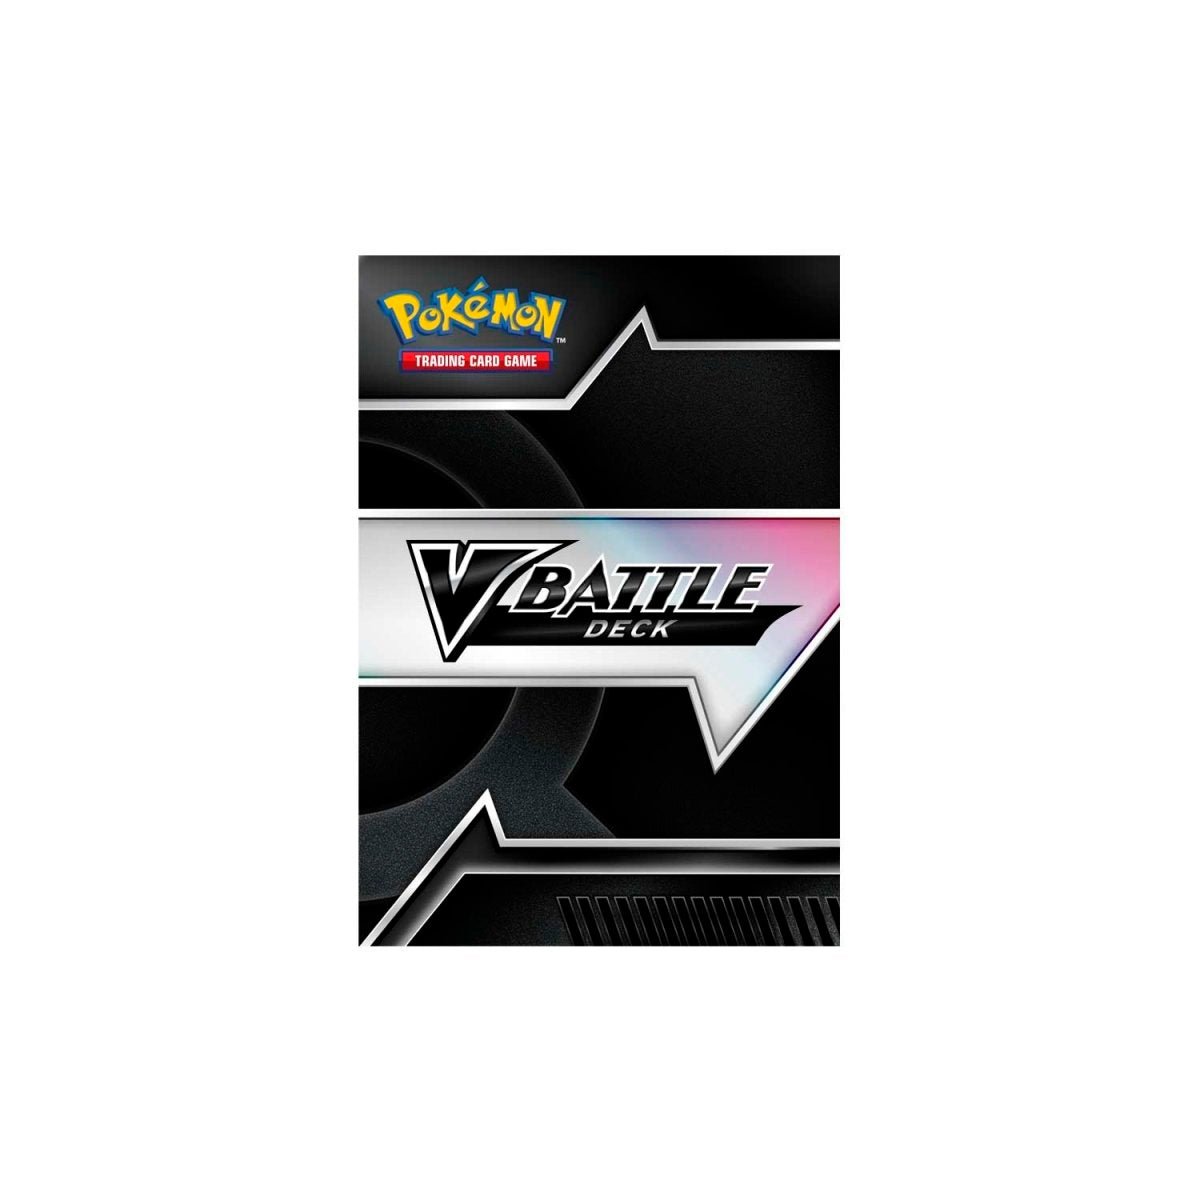 Pokémon TCG: Victini V Battle Deck - PokeRvmTheme Deck